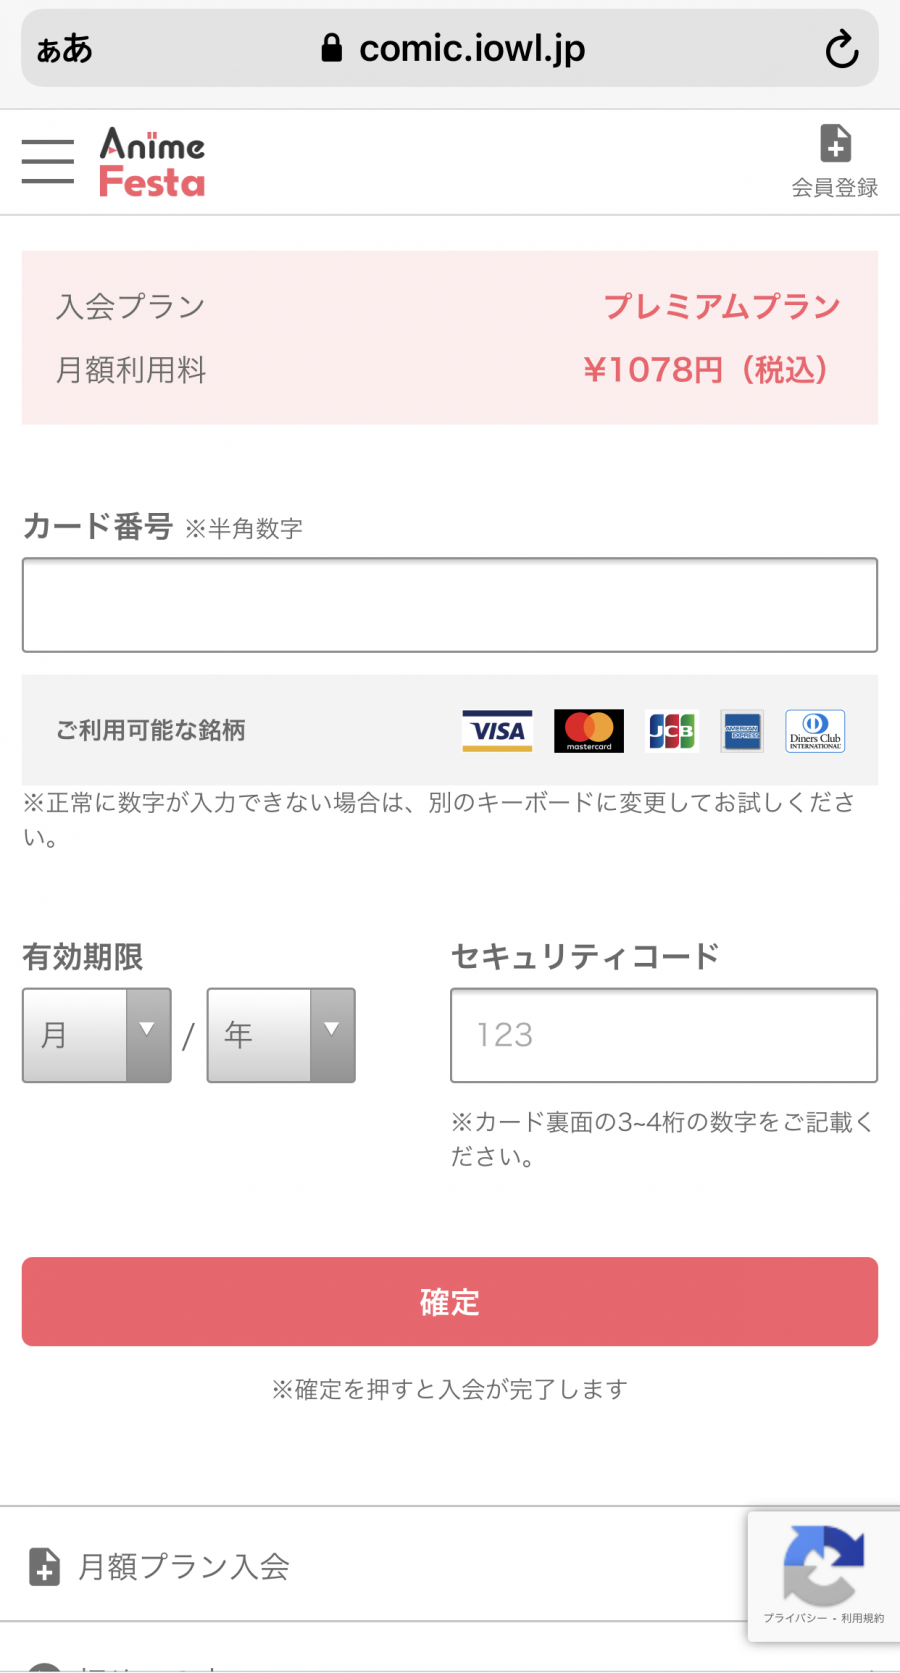 「アニメフェスタ」のクレジットカード情報入力画面